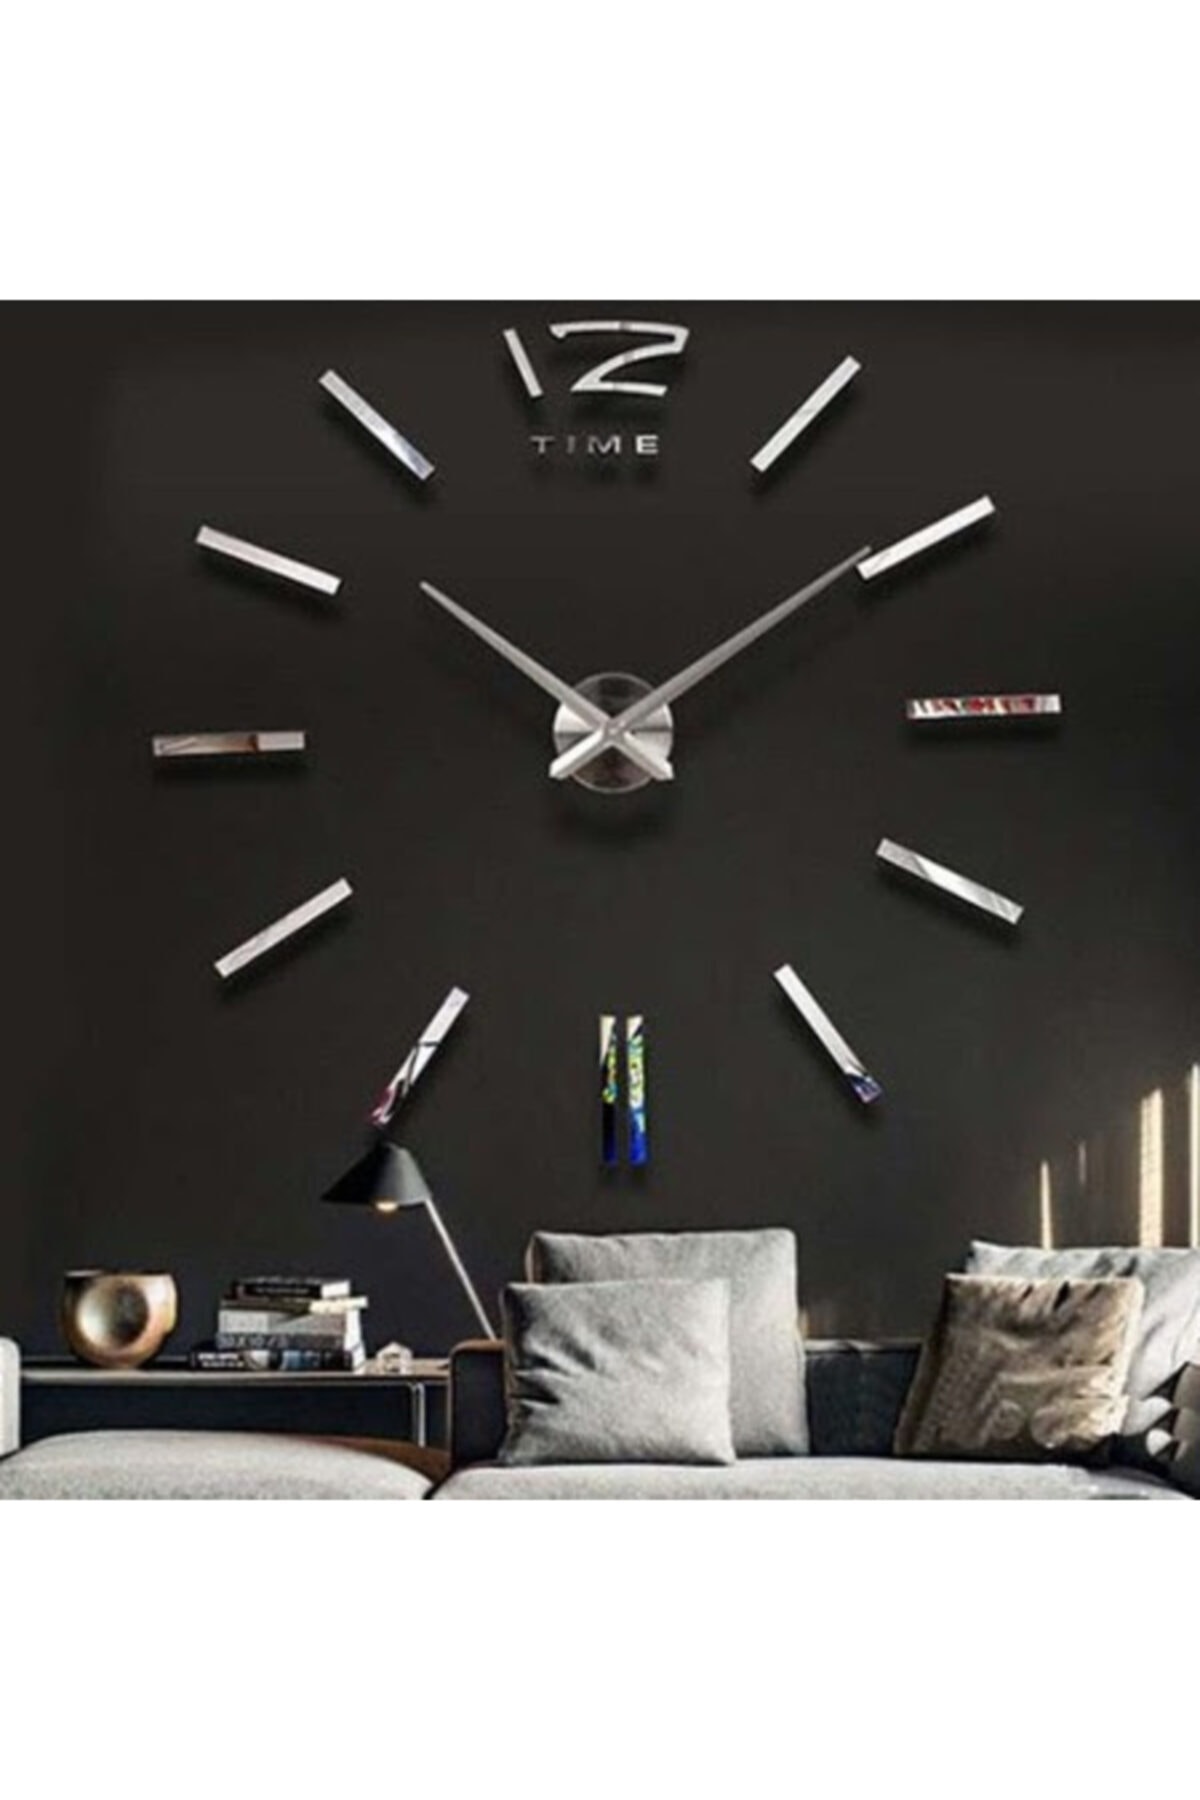 Otantik Dıy Clock Yeni Nesil 3d Duvar Saati Model 1 (gümüş Ayna)